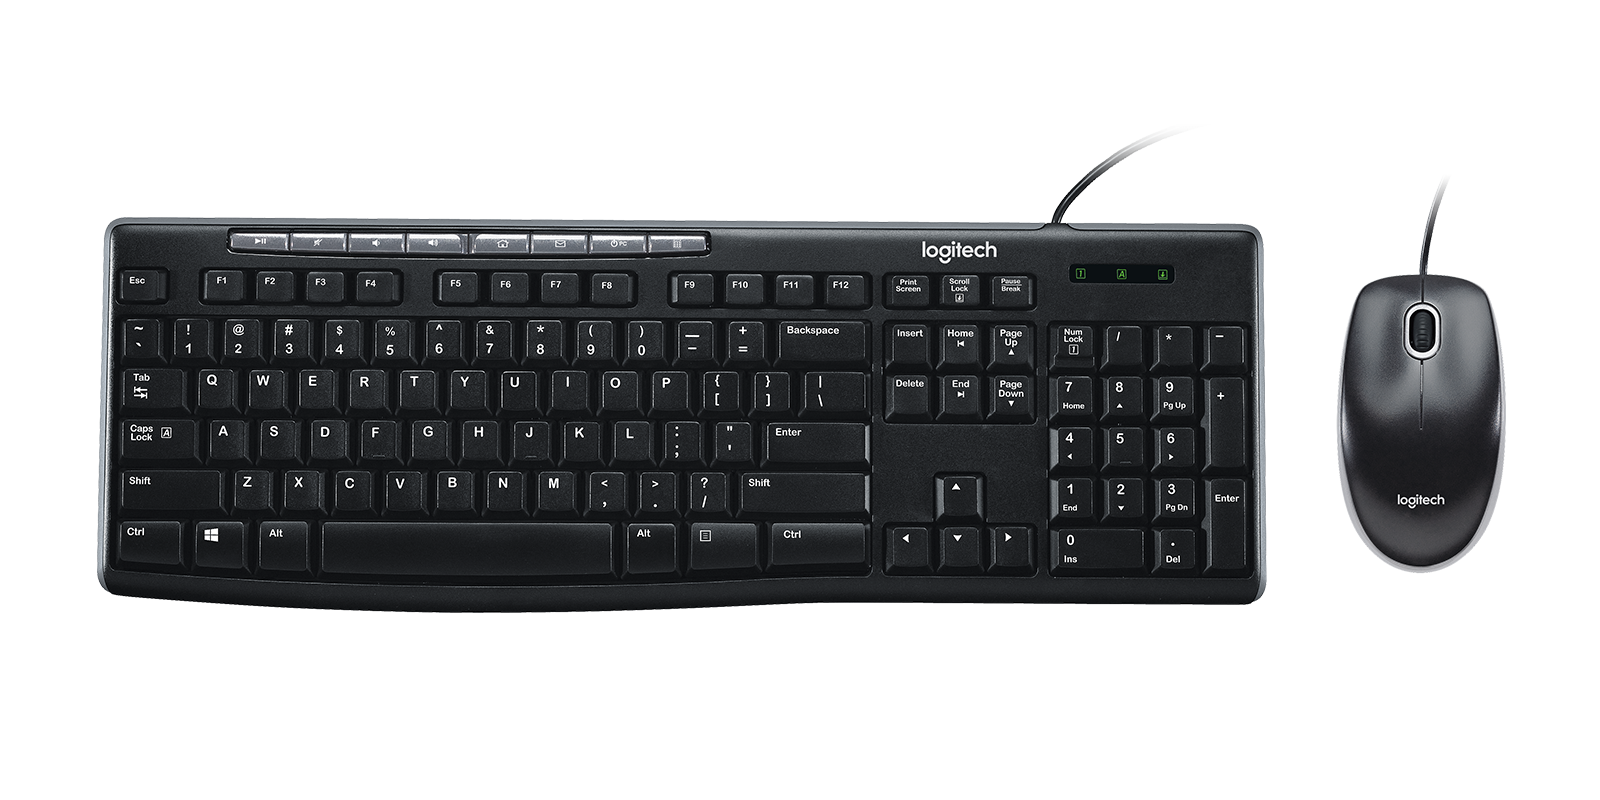 kok etc Excel Logitech MK200 Multimedia Keyboard Mouse Combo